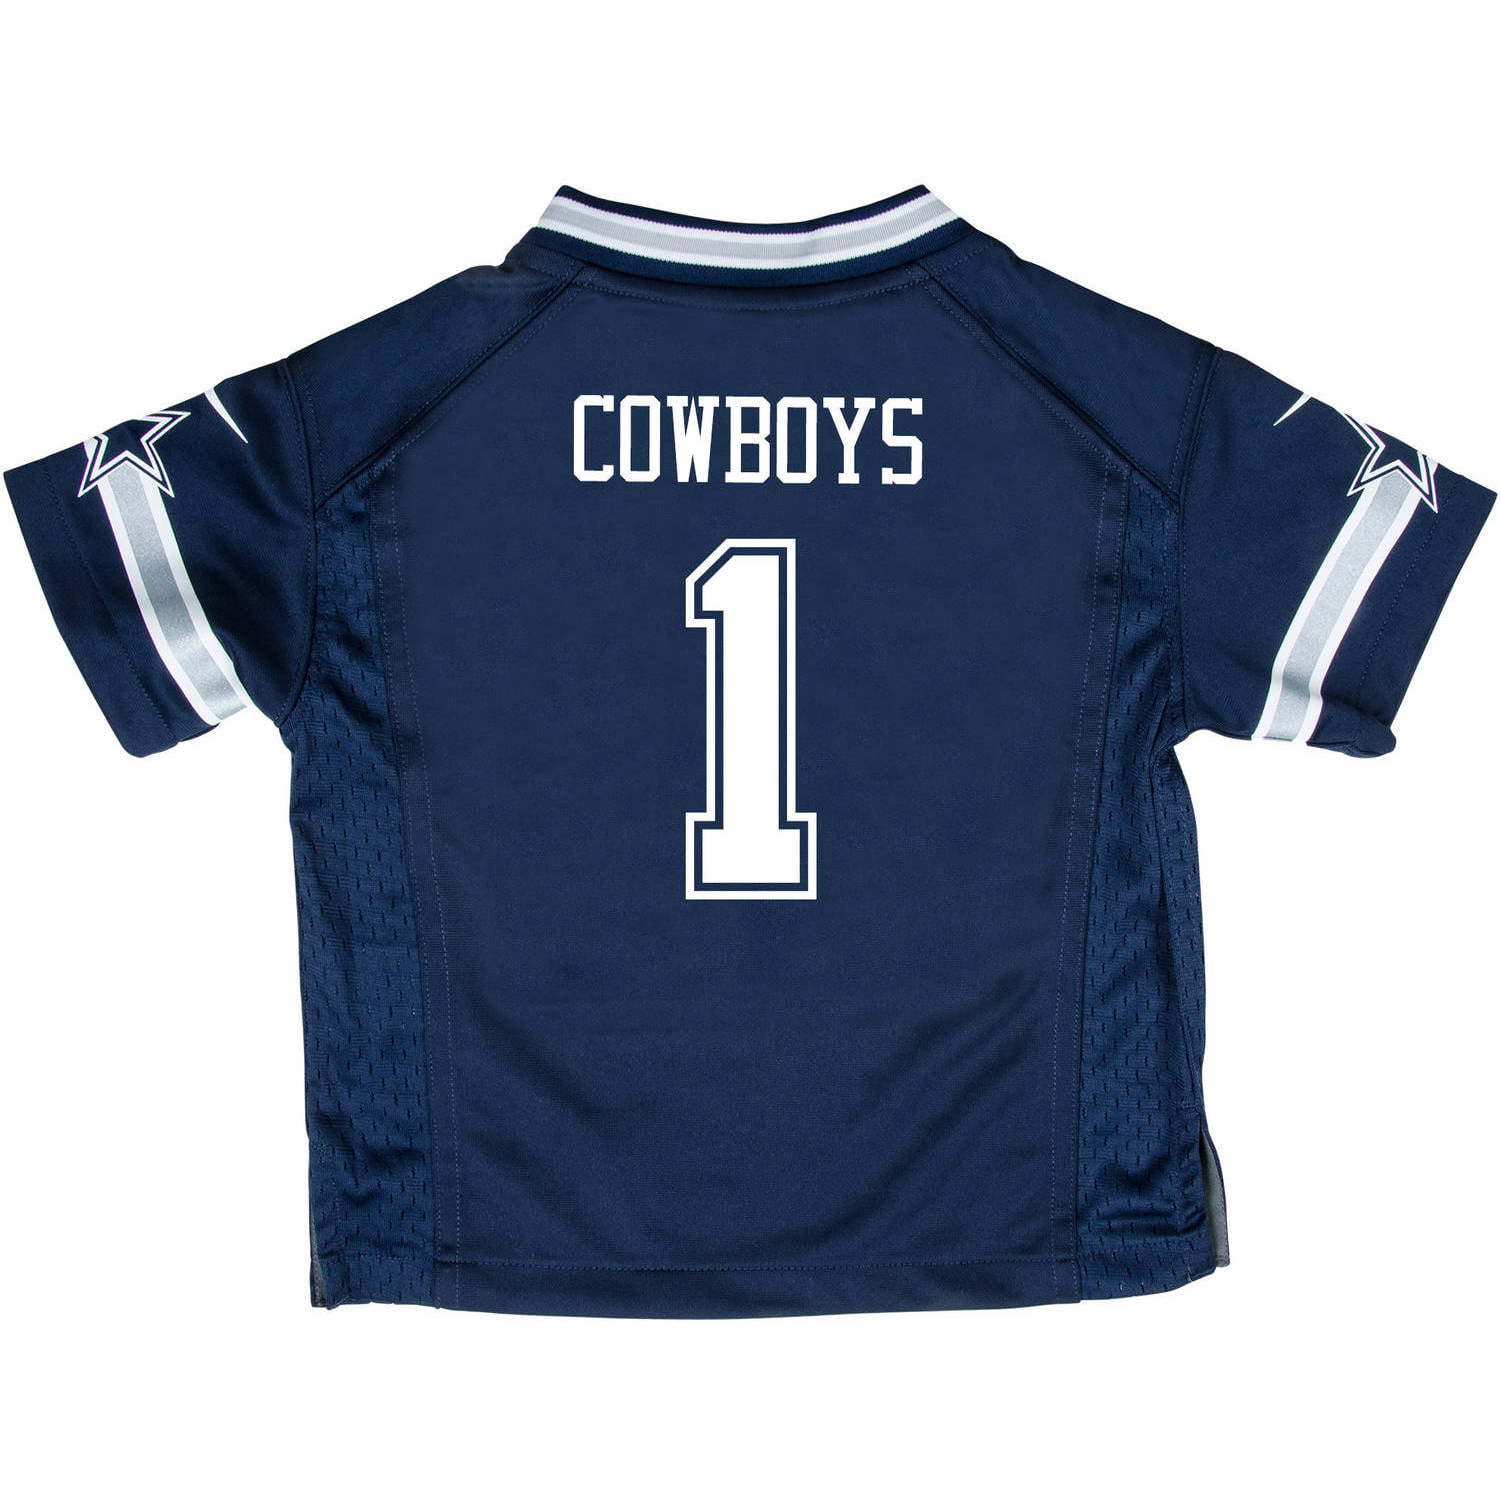 buy dallas cowboys jersey